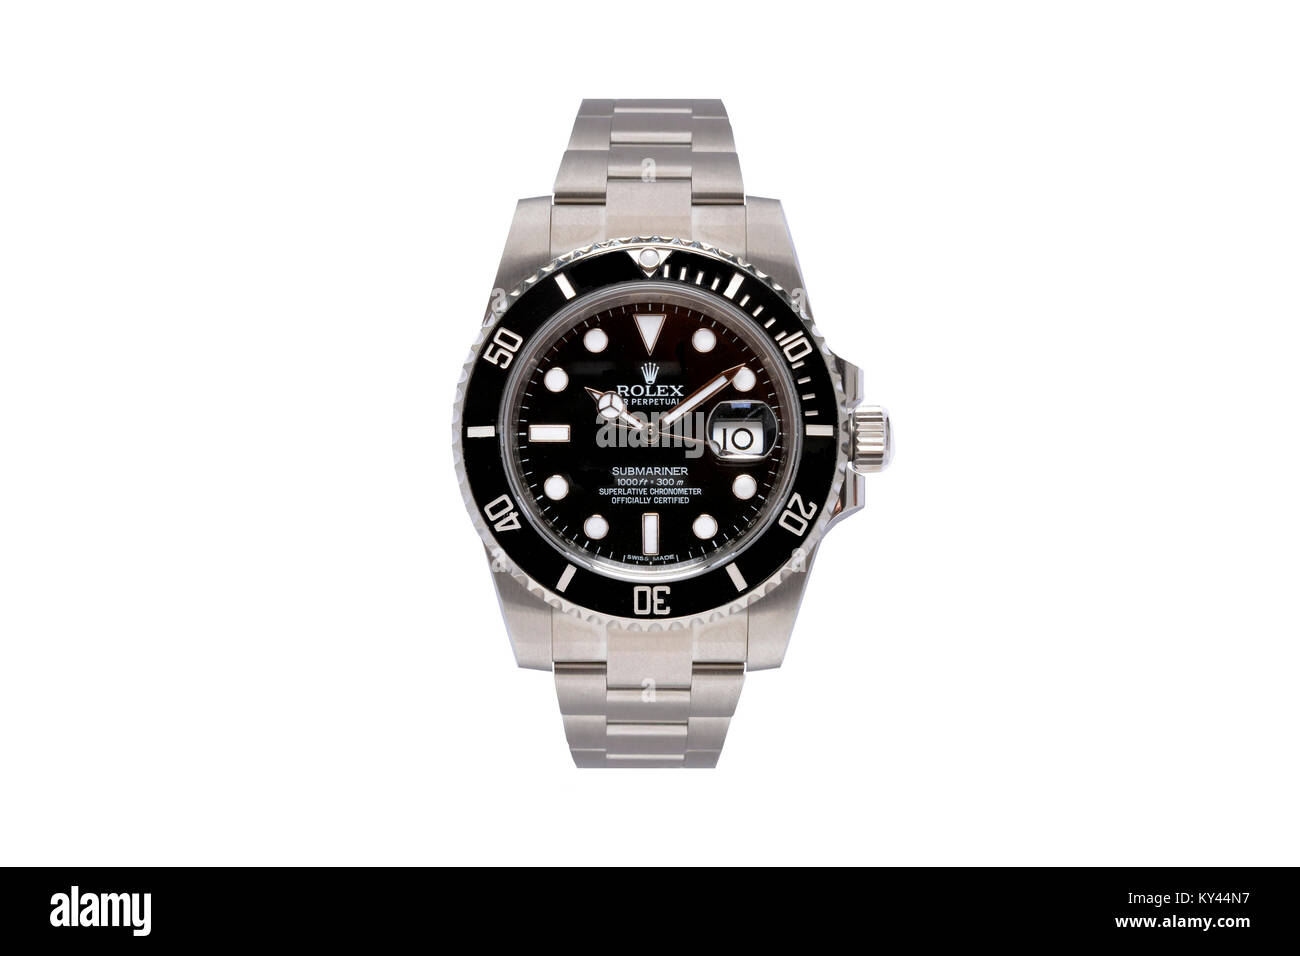 Rolex Submariner acero inoxidable reloj de hombre con la cara negra Foto de stock